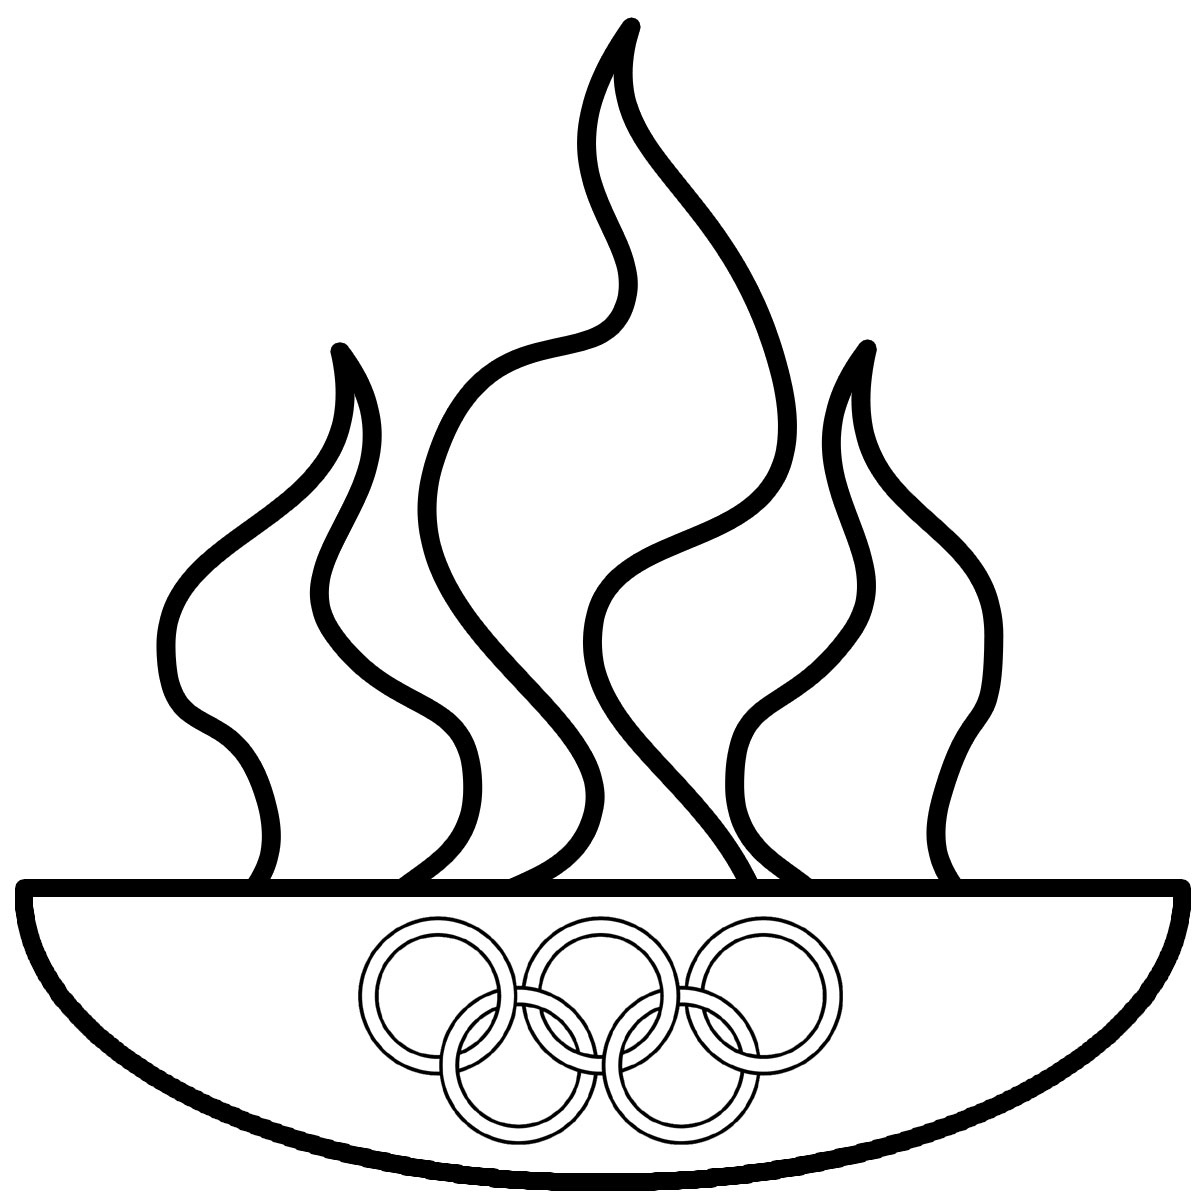 Clip Art  Summer Olympics Medal B W   Abcteach